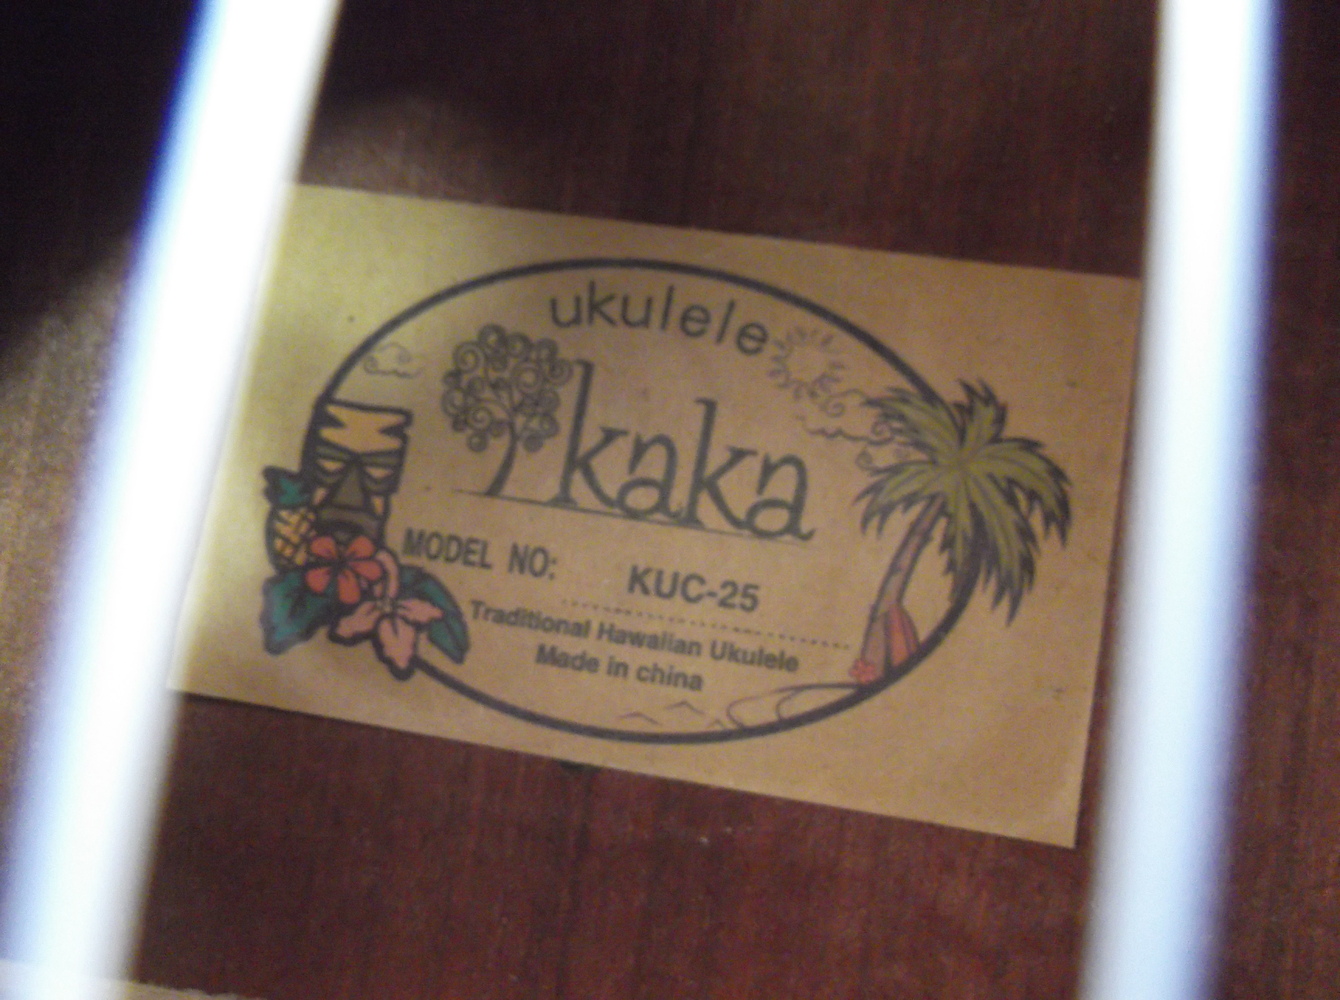 *AS-IS* Kaka KUC-25 Ukulele W/SOFT CASE